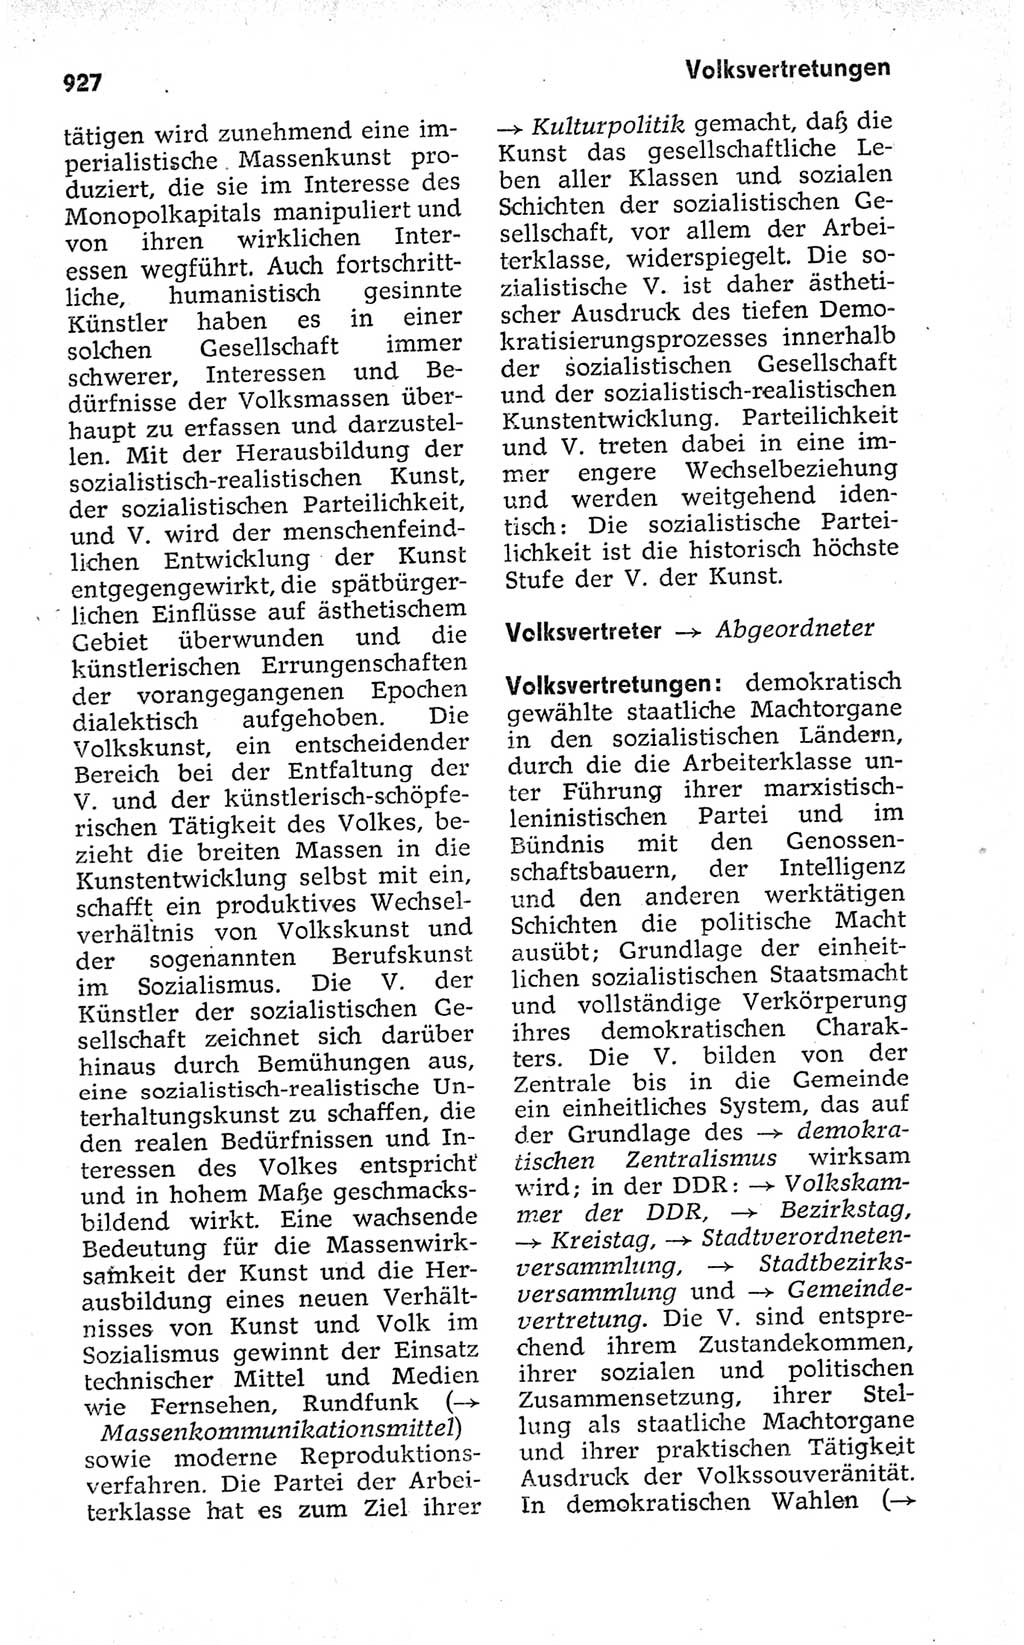 Kleines politisches Wörterbuch [Deutsche Demokratische Republik (DDR)] 1973, Seite 927 (Kl. pol. Wb. DDR 1973, S. 927)